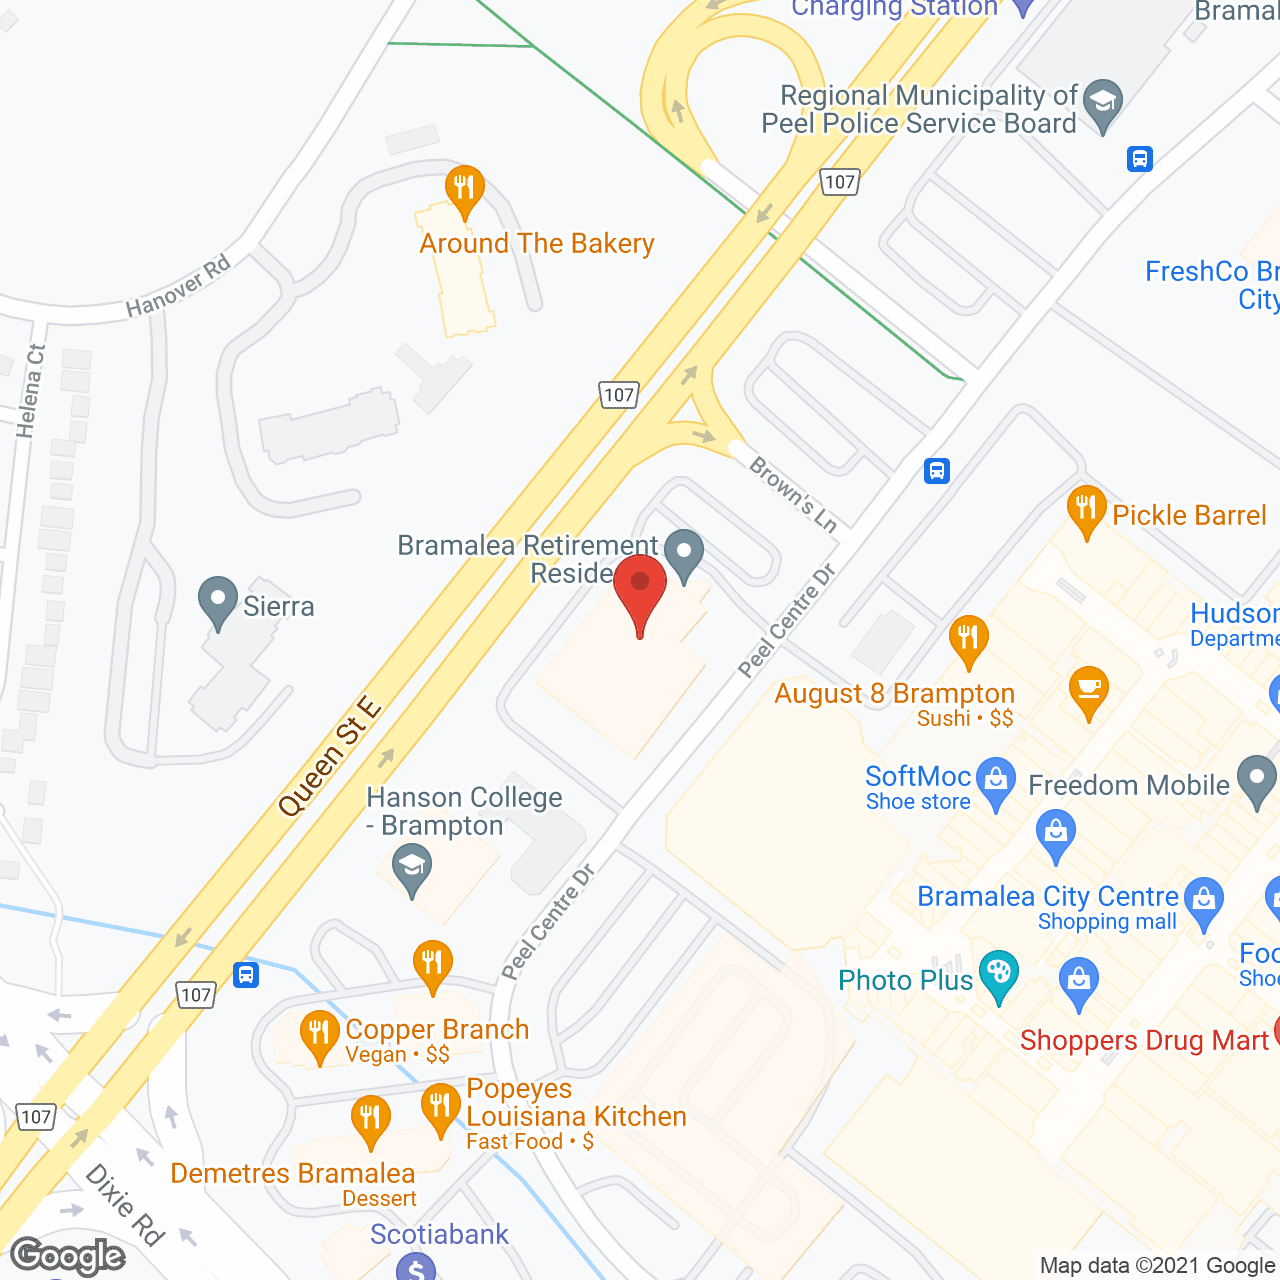 Bramalea Retirement Residence in google map